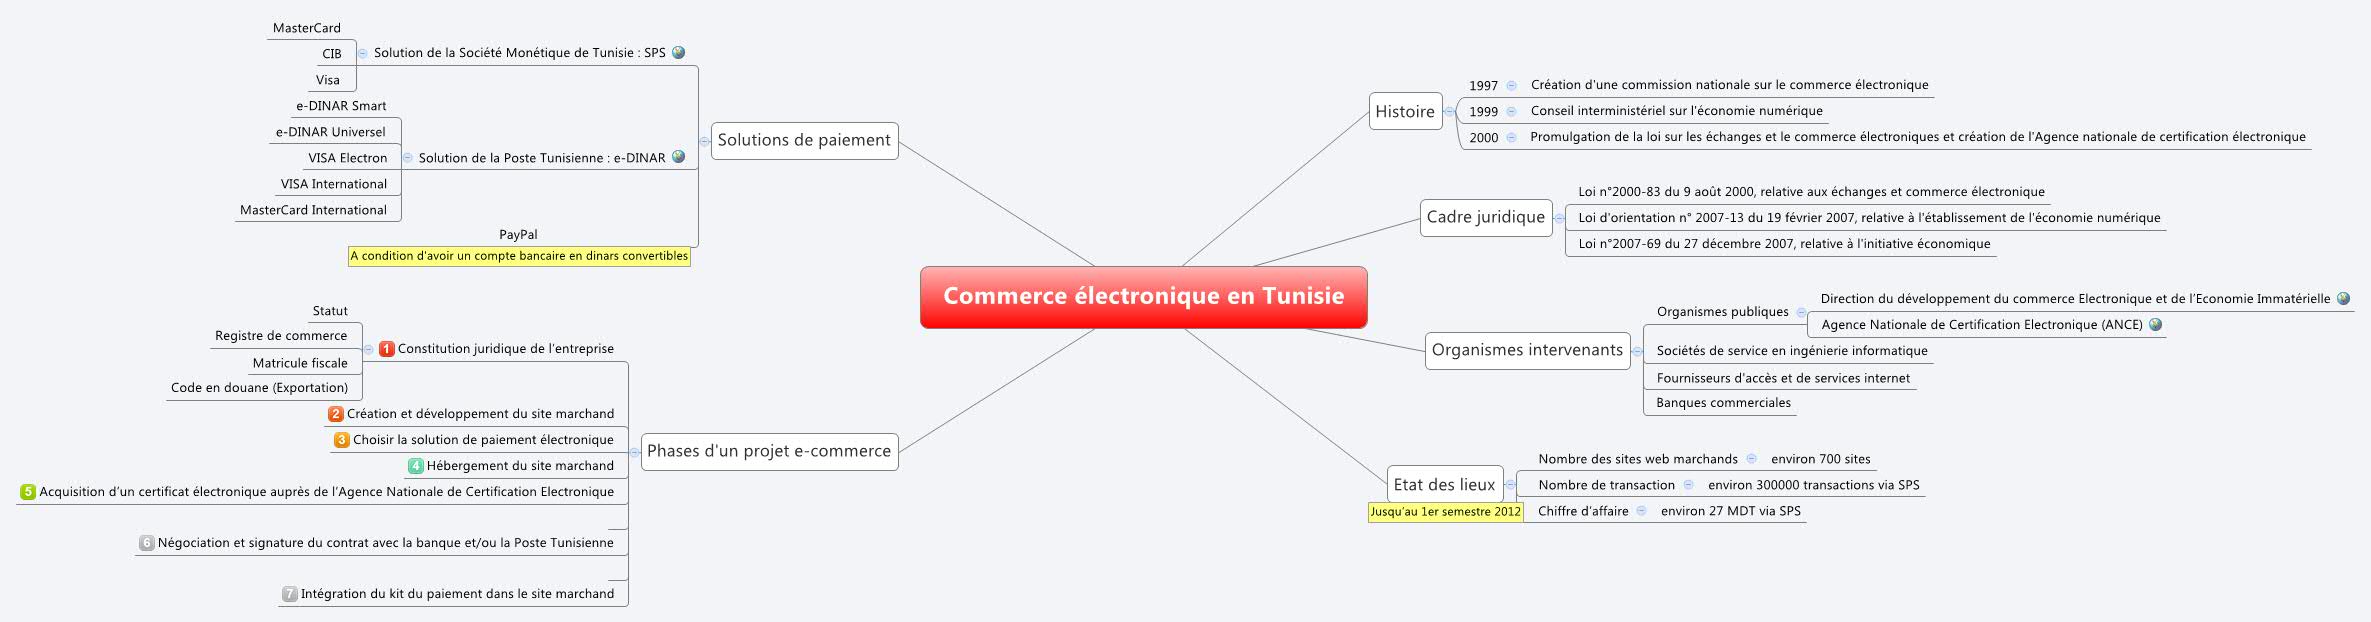 Carte mentale de l'e-commerce en Tunisie